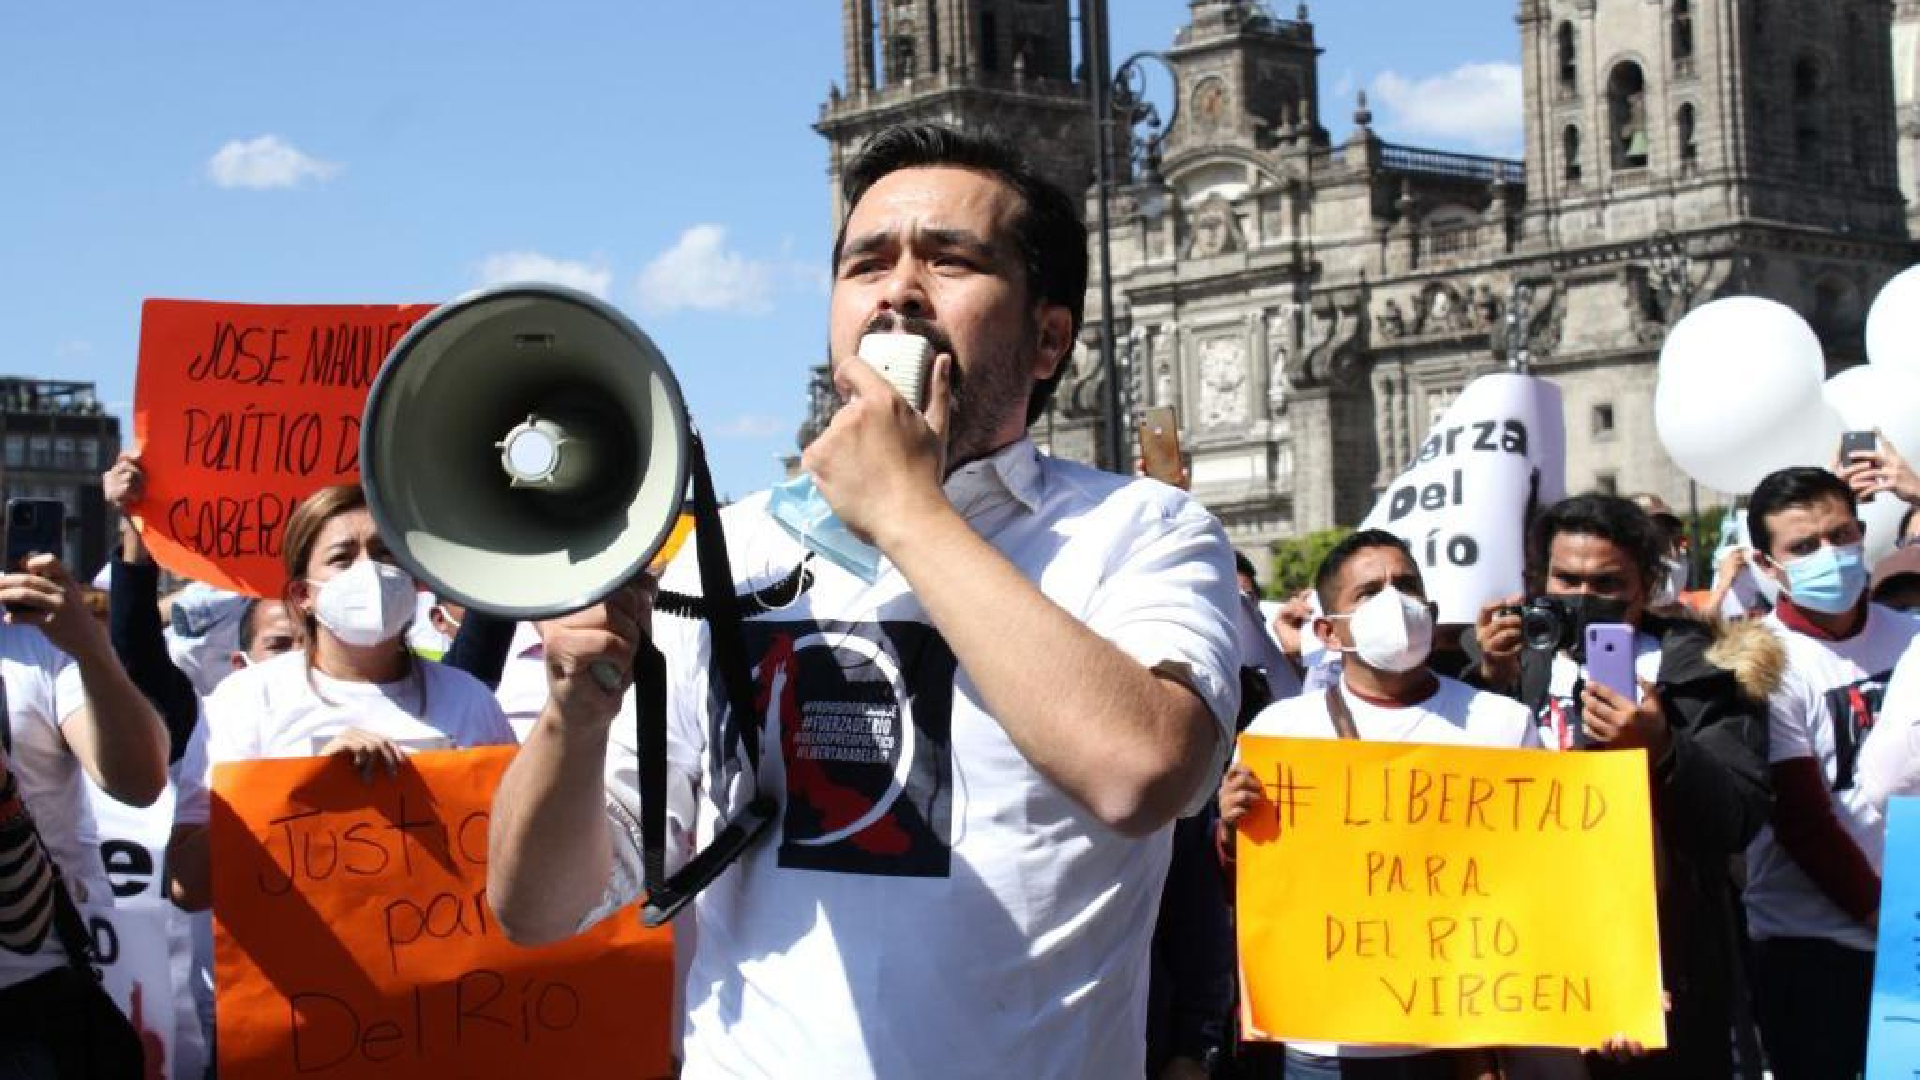 Jorge Álvarez Máynez y Salomón Chertorivski  encabezaron una manifestación para solicitar la liberación de José Manuel del Río Virgen (Foto: Cortesía MC / Twitter / @AlvarezMaynez)